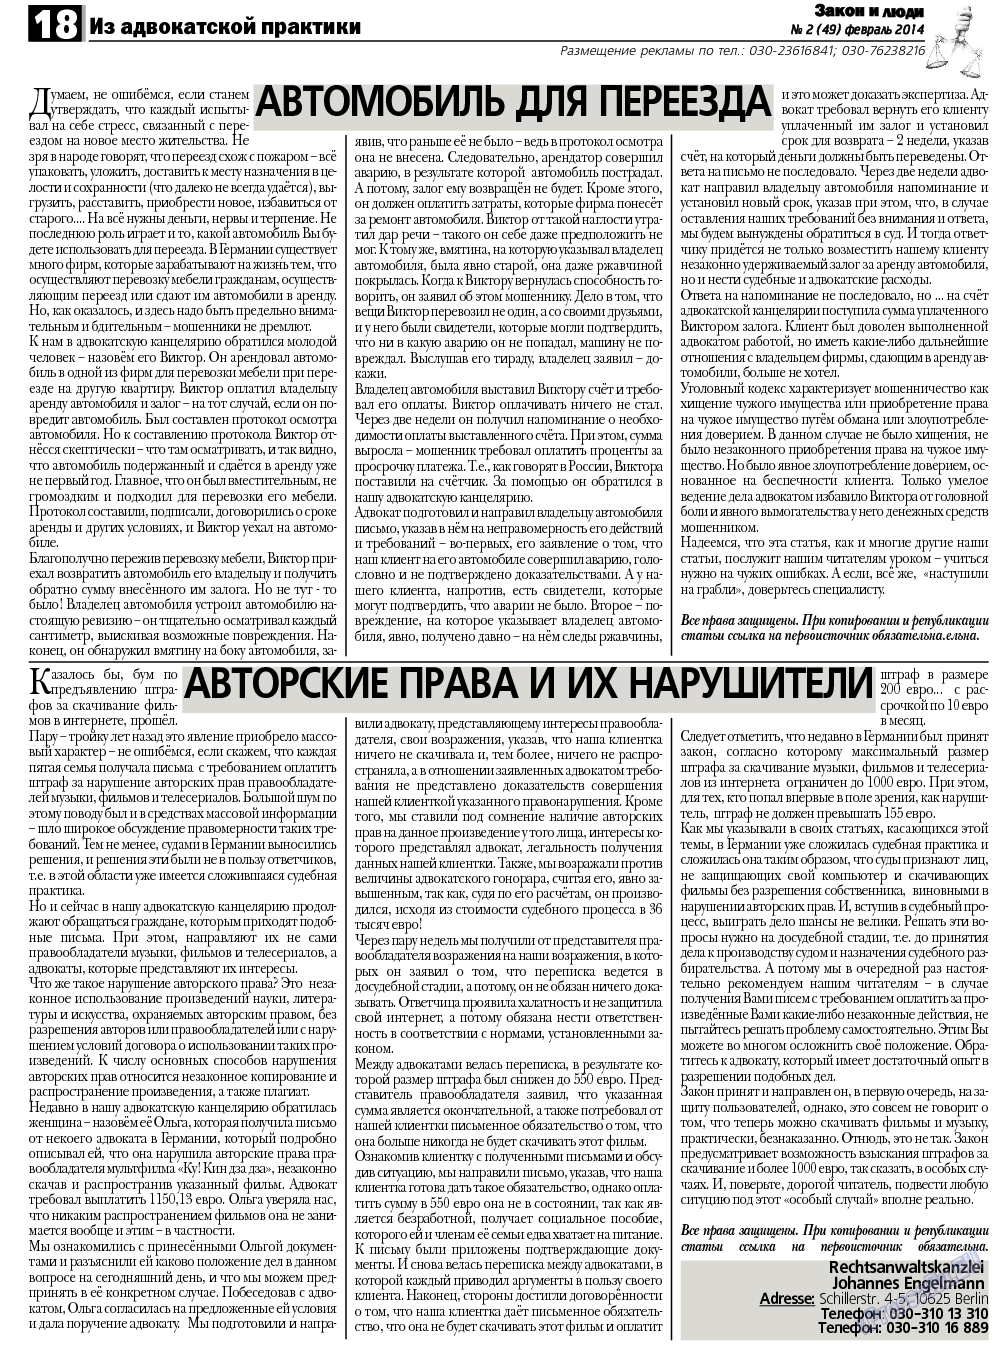 Закон и люди (газета). 2014 год, номер 2, стр. 18